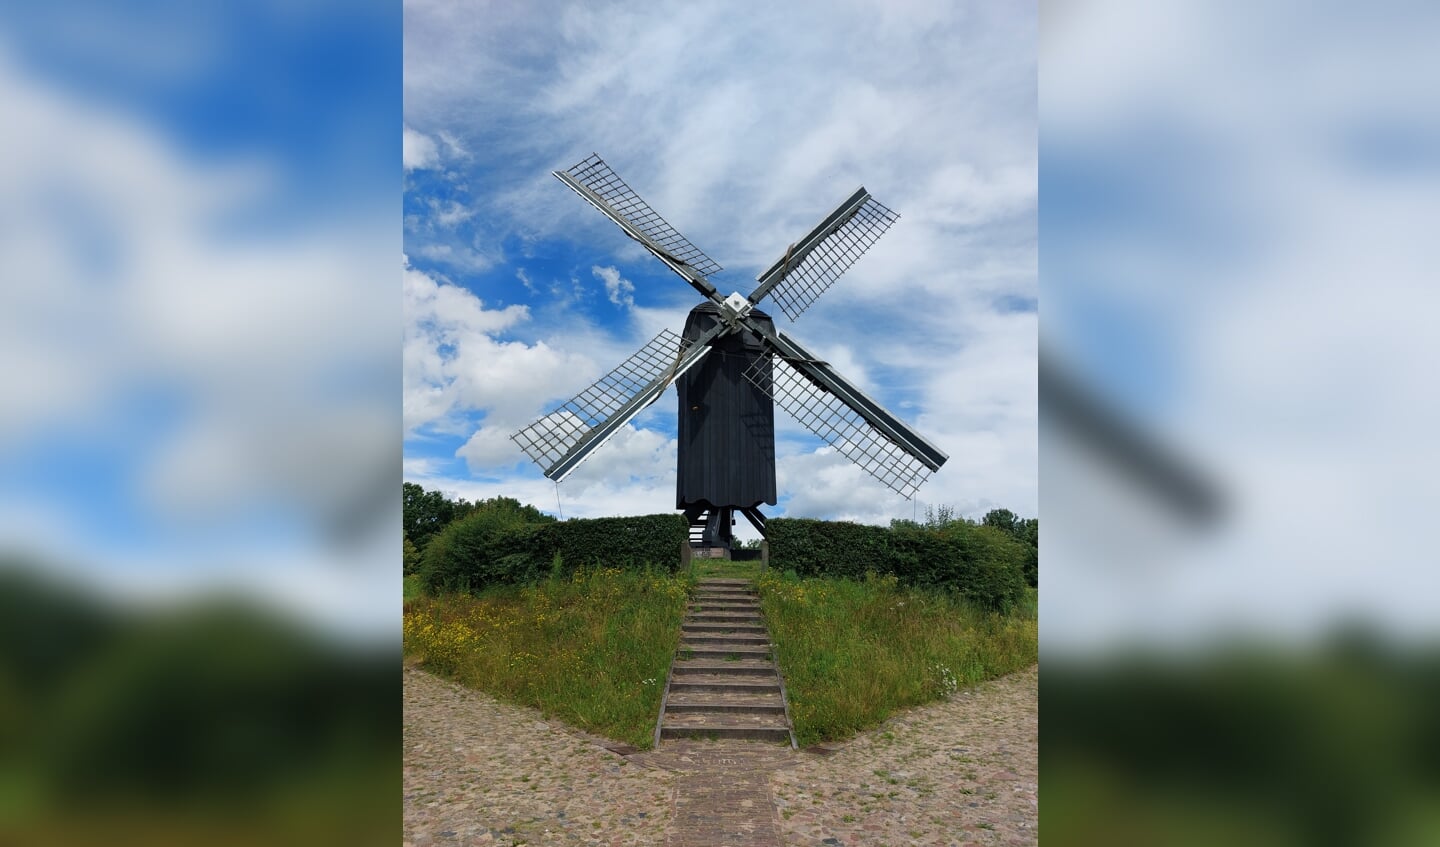 ,,Tijdens het bezoek aan Bourtange, twee weken geleden, werd ook dit plaatje geschoten. Fraaie Hollandse luchten met een molen. Je zou er bijna een poster van maken.